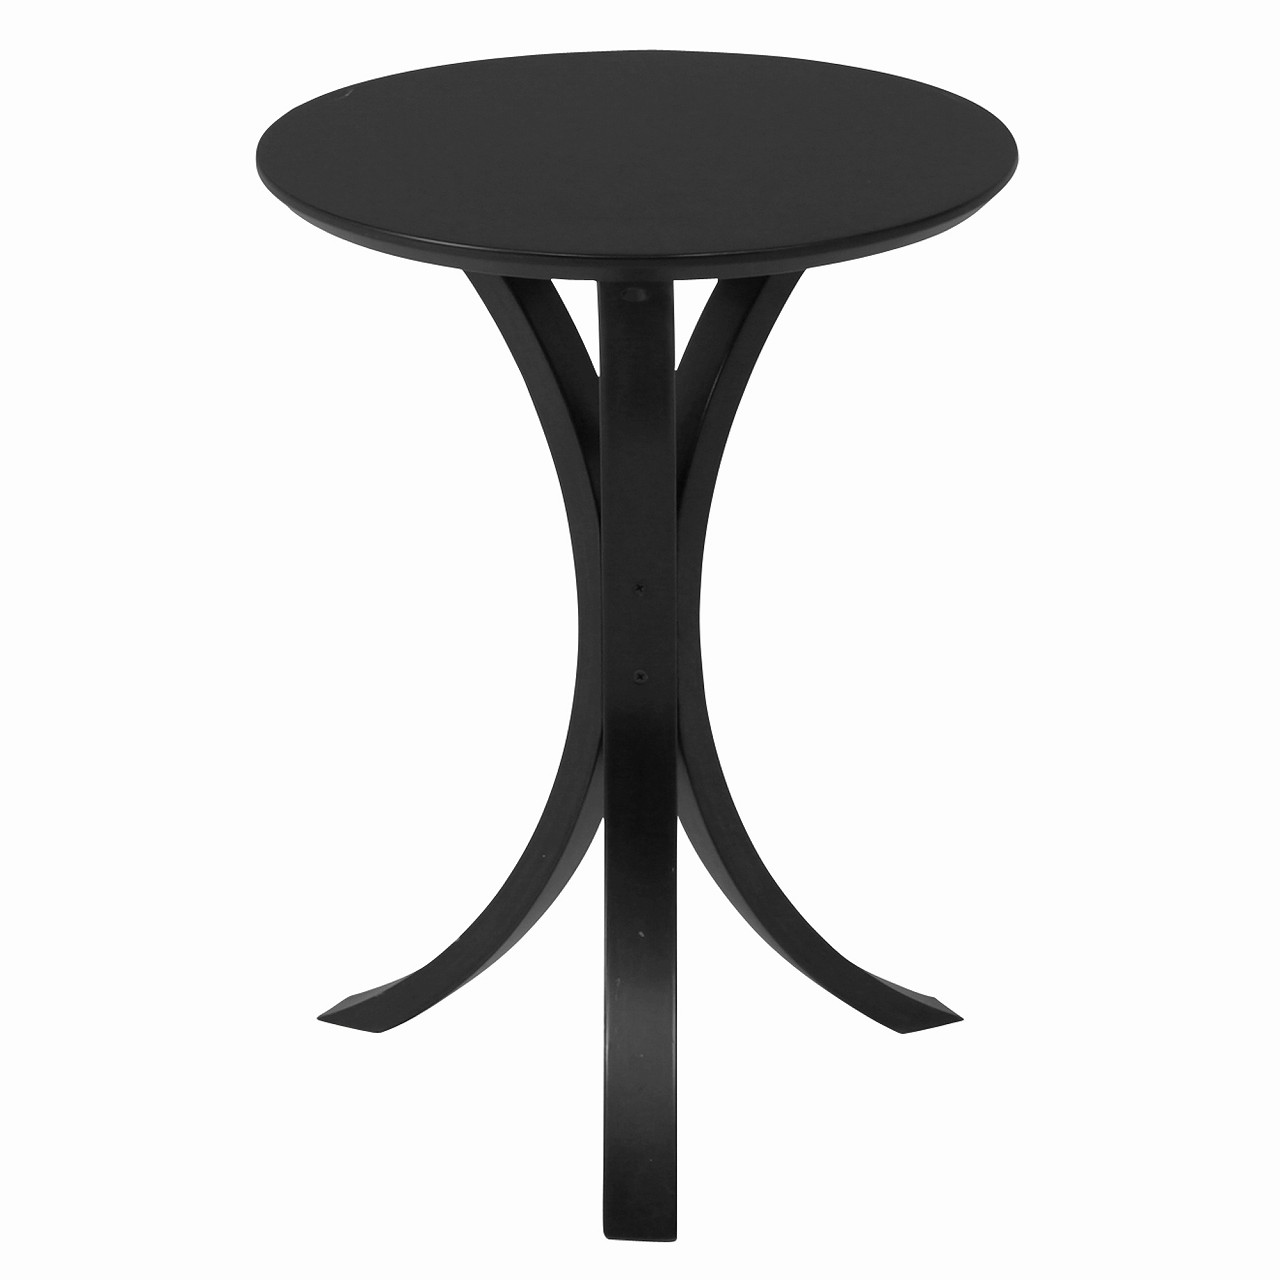 テーブル サイドテーブル 木製テーブル ベッドサイド サイドテーブル/クレール clair